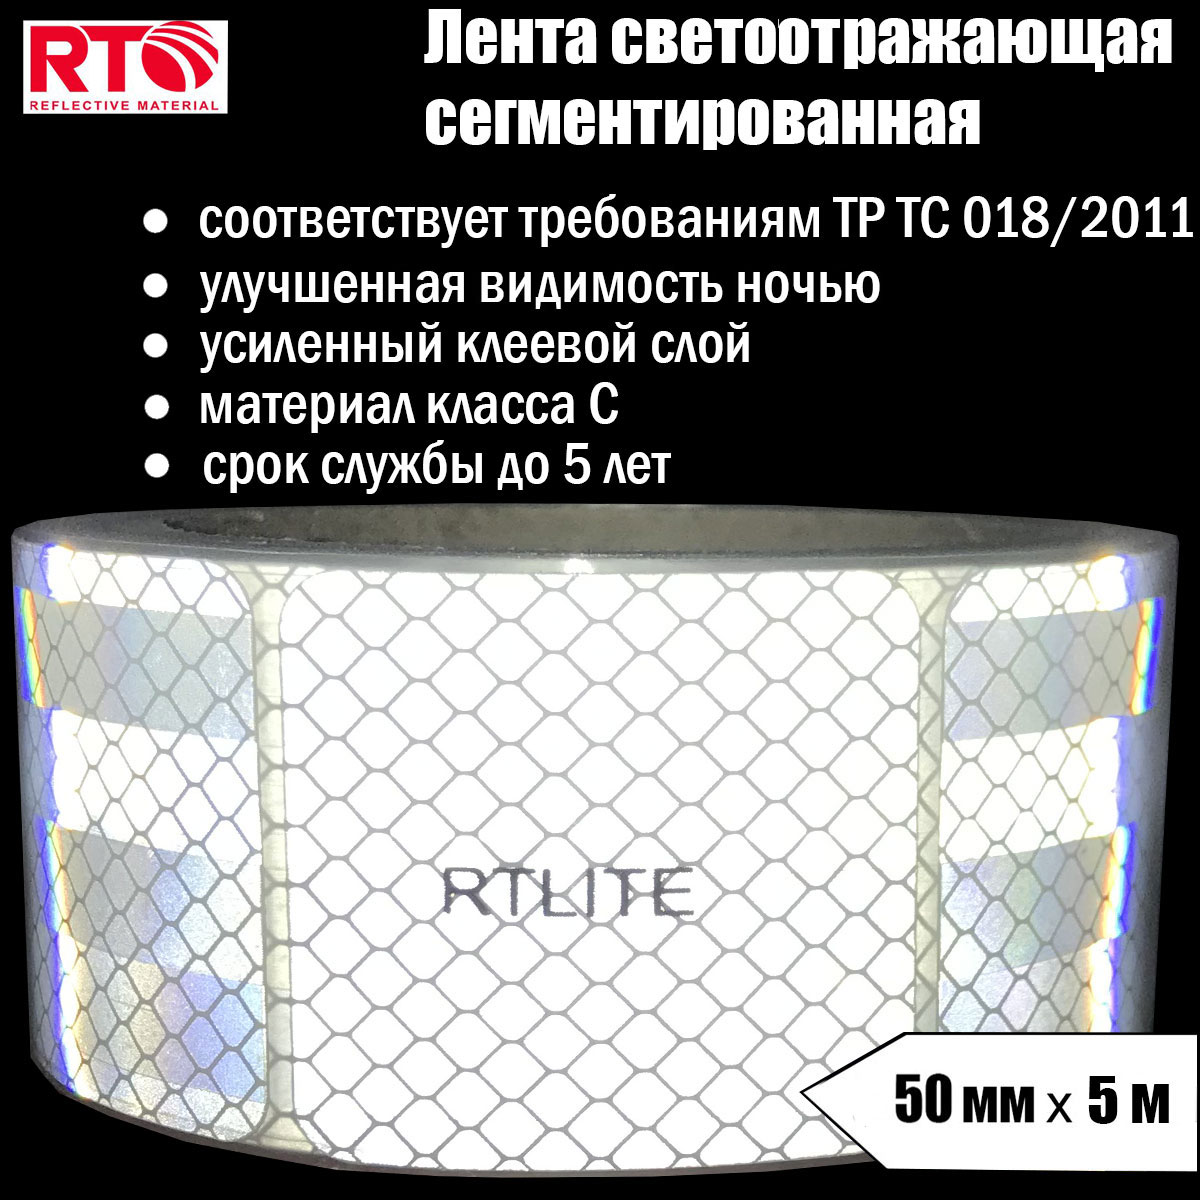 Лента светоотражающая сегментированная RTLITE RT-V104 для контурной маркировки, 50мм х 5м светоотражающая лента самоклеящаяся белая 5 см х 45 м